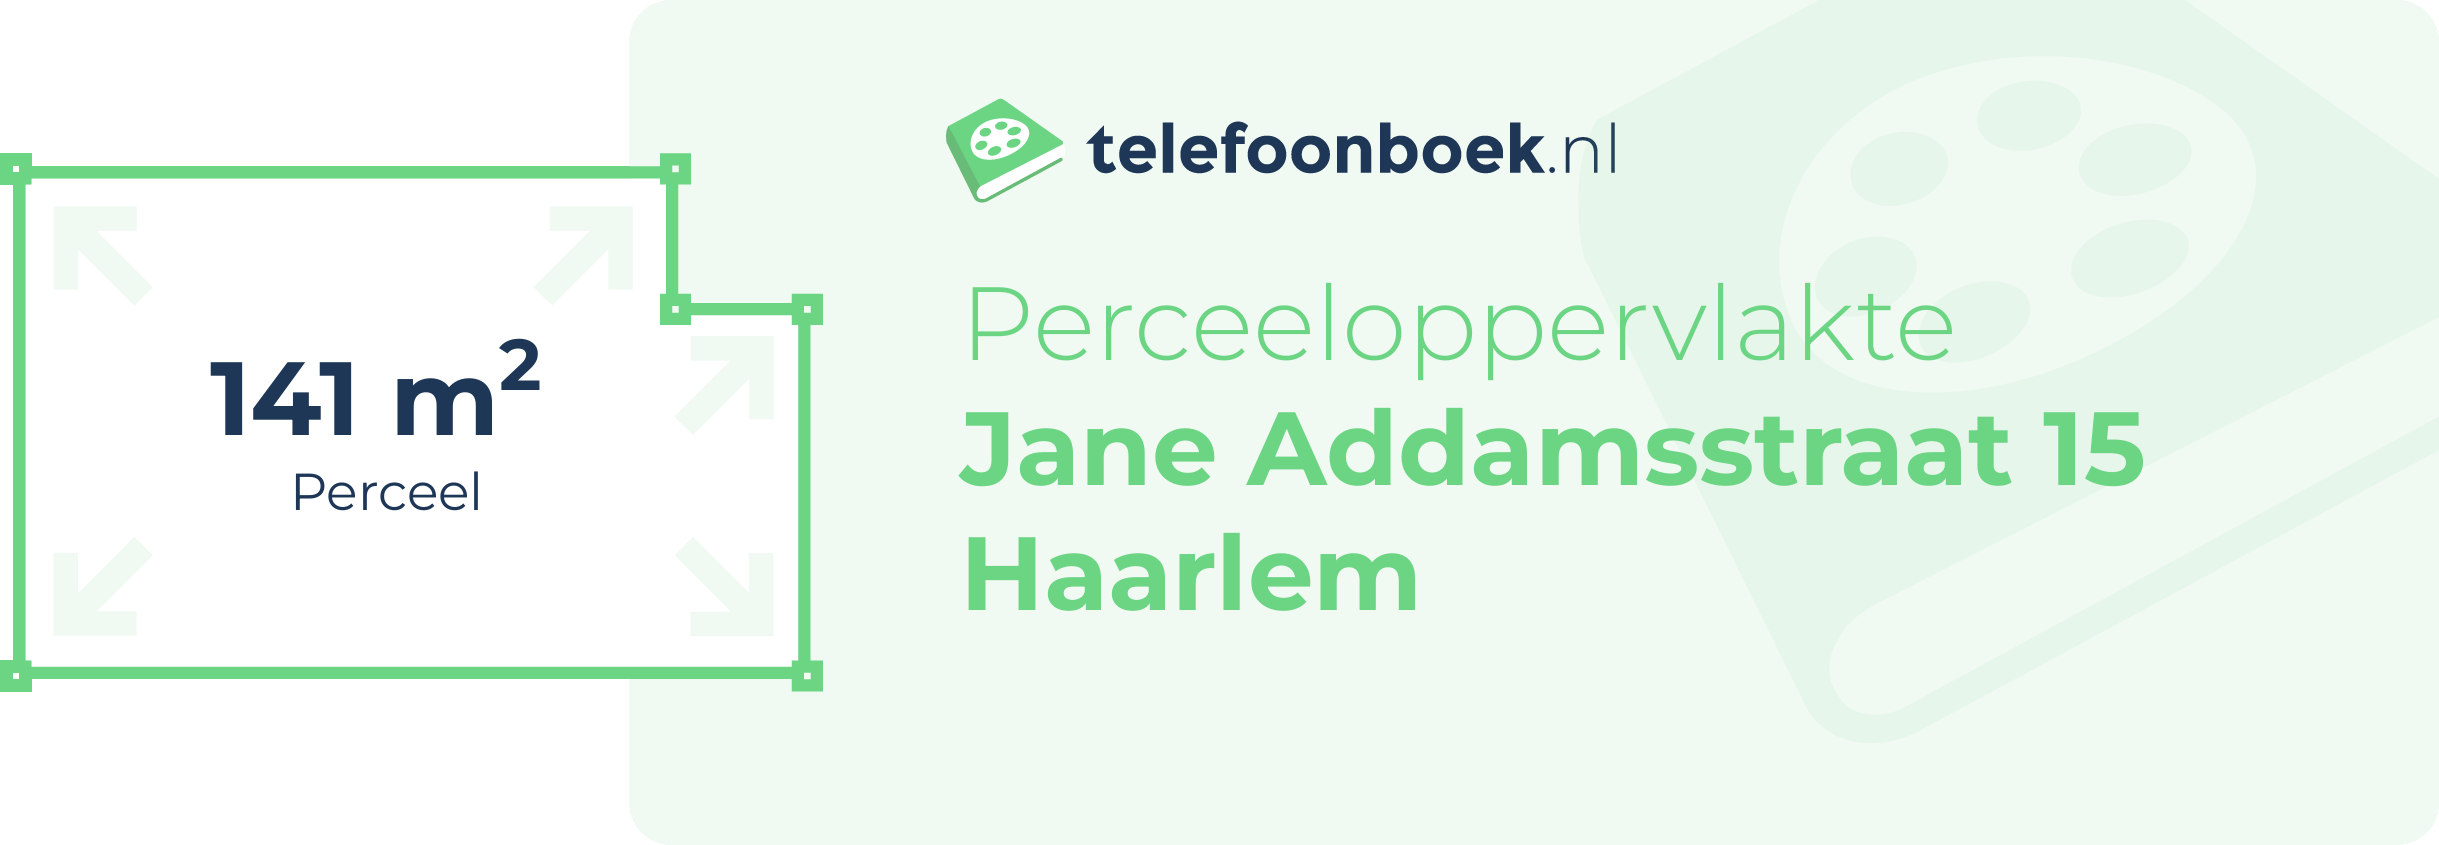 Perceeloppervlakte Jane Addamsstraat 15 Haarlem